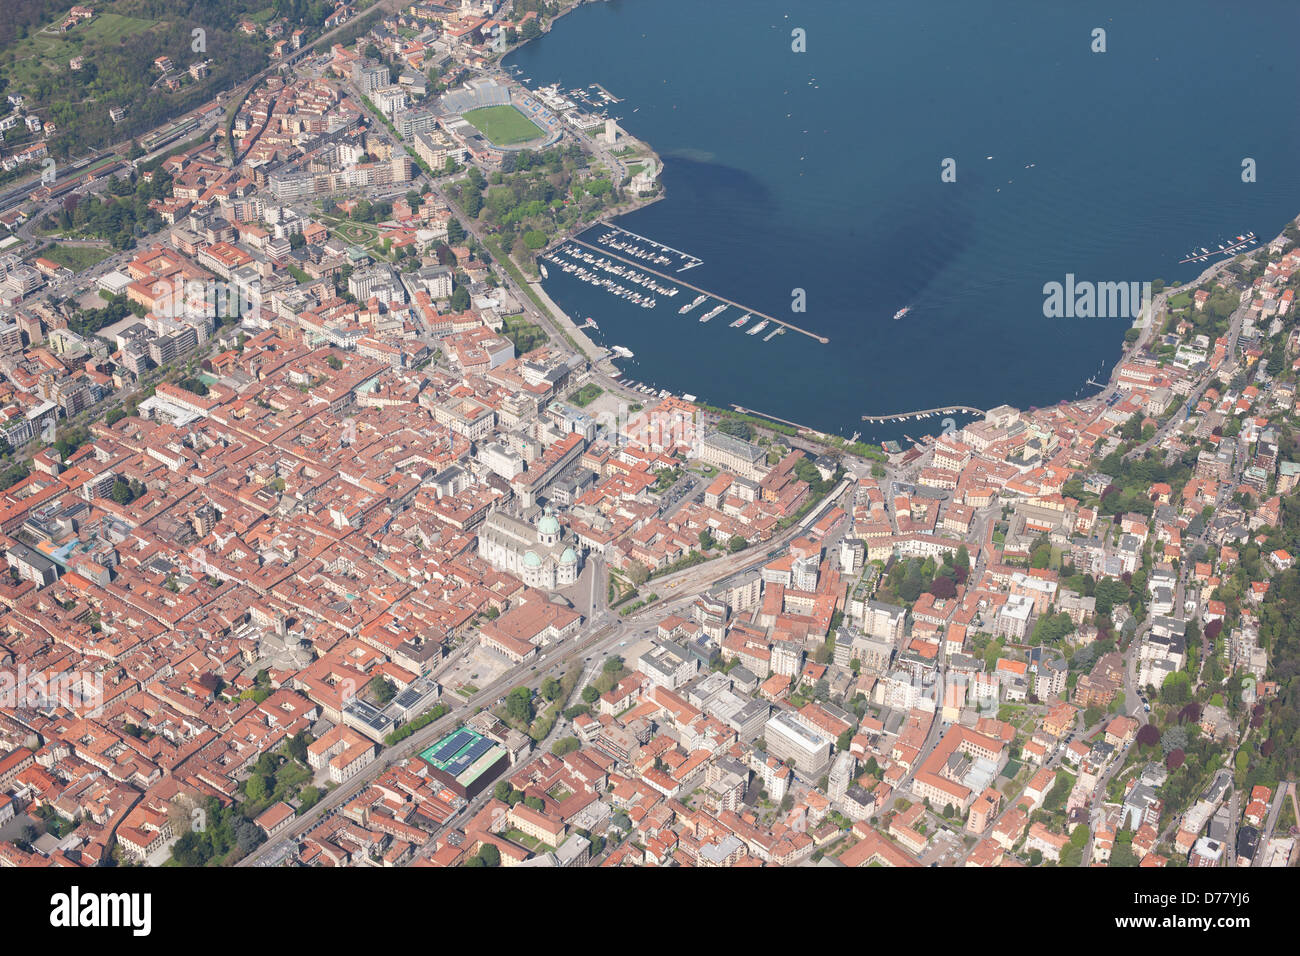 VISTA AEREA. Città di Como all'estremità sud-occidentale del lago di Como. Provincia di Como, Lombardia, Italia. Foto Stock